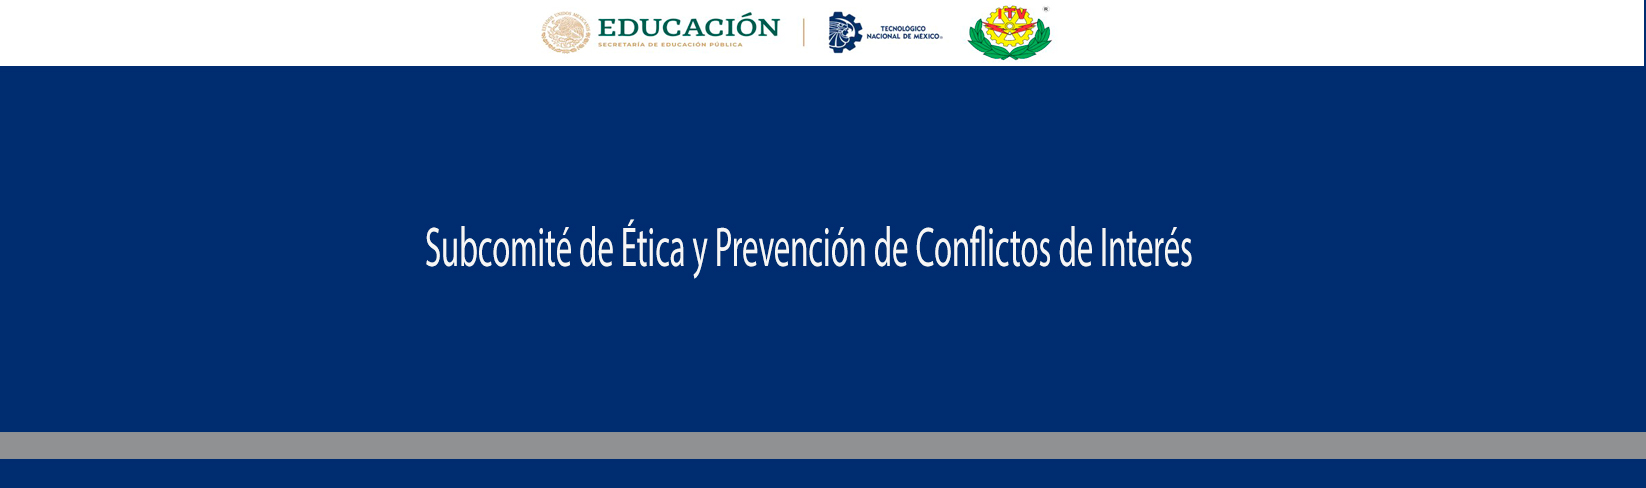 carrusel_subcomite_de_etica_y_Prevención_de_conflictos_de_interes.jpg